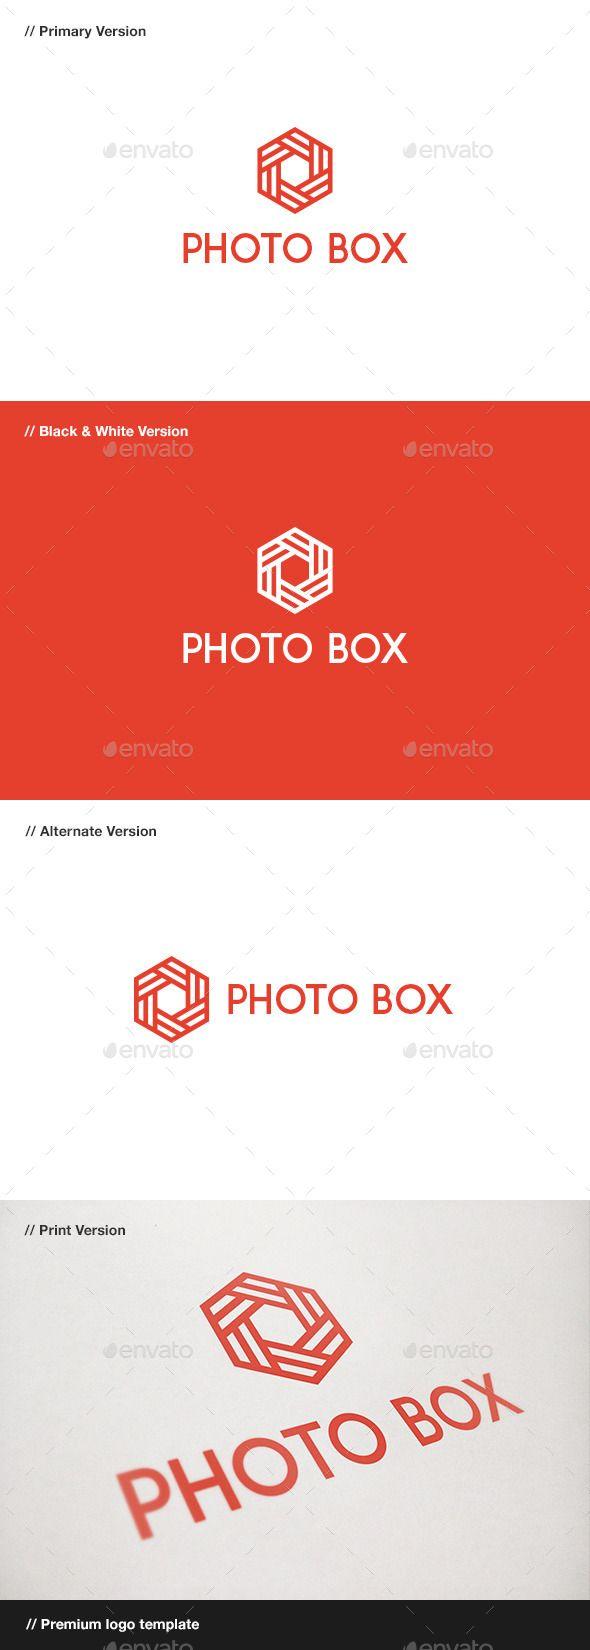 Red Hexagon Sports Logo - IDEAS Help. Logos, Photography logos, Logo templates